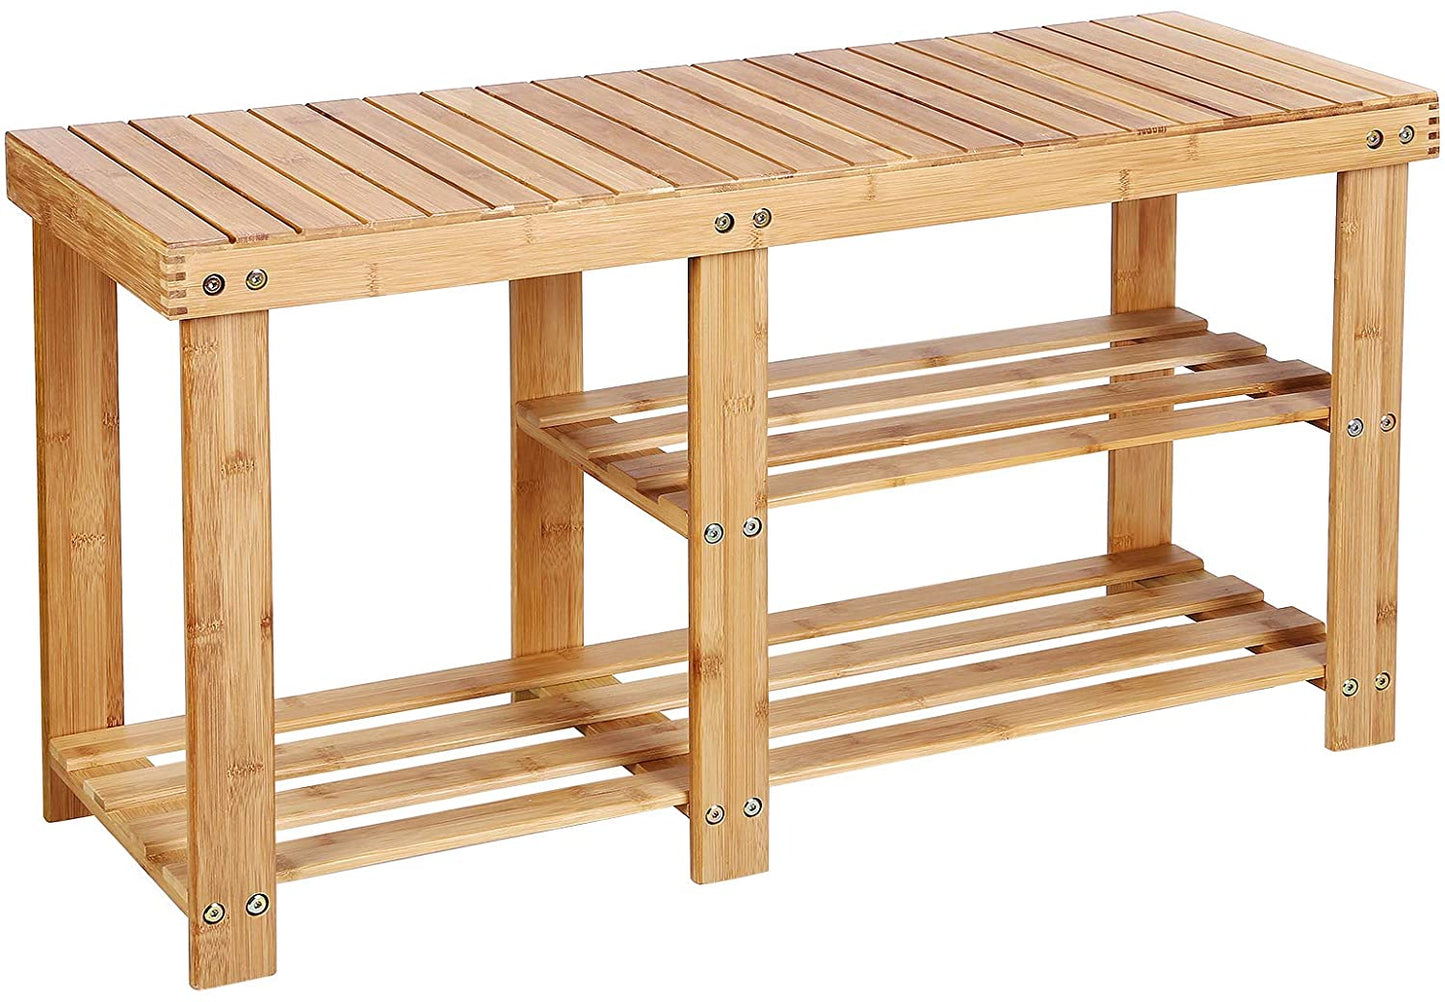 Benches : Bamboo Shoe Rack Bench & Storage Organizer, 3 Tiers Shoe Shelf